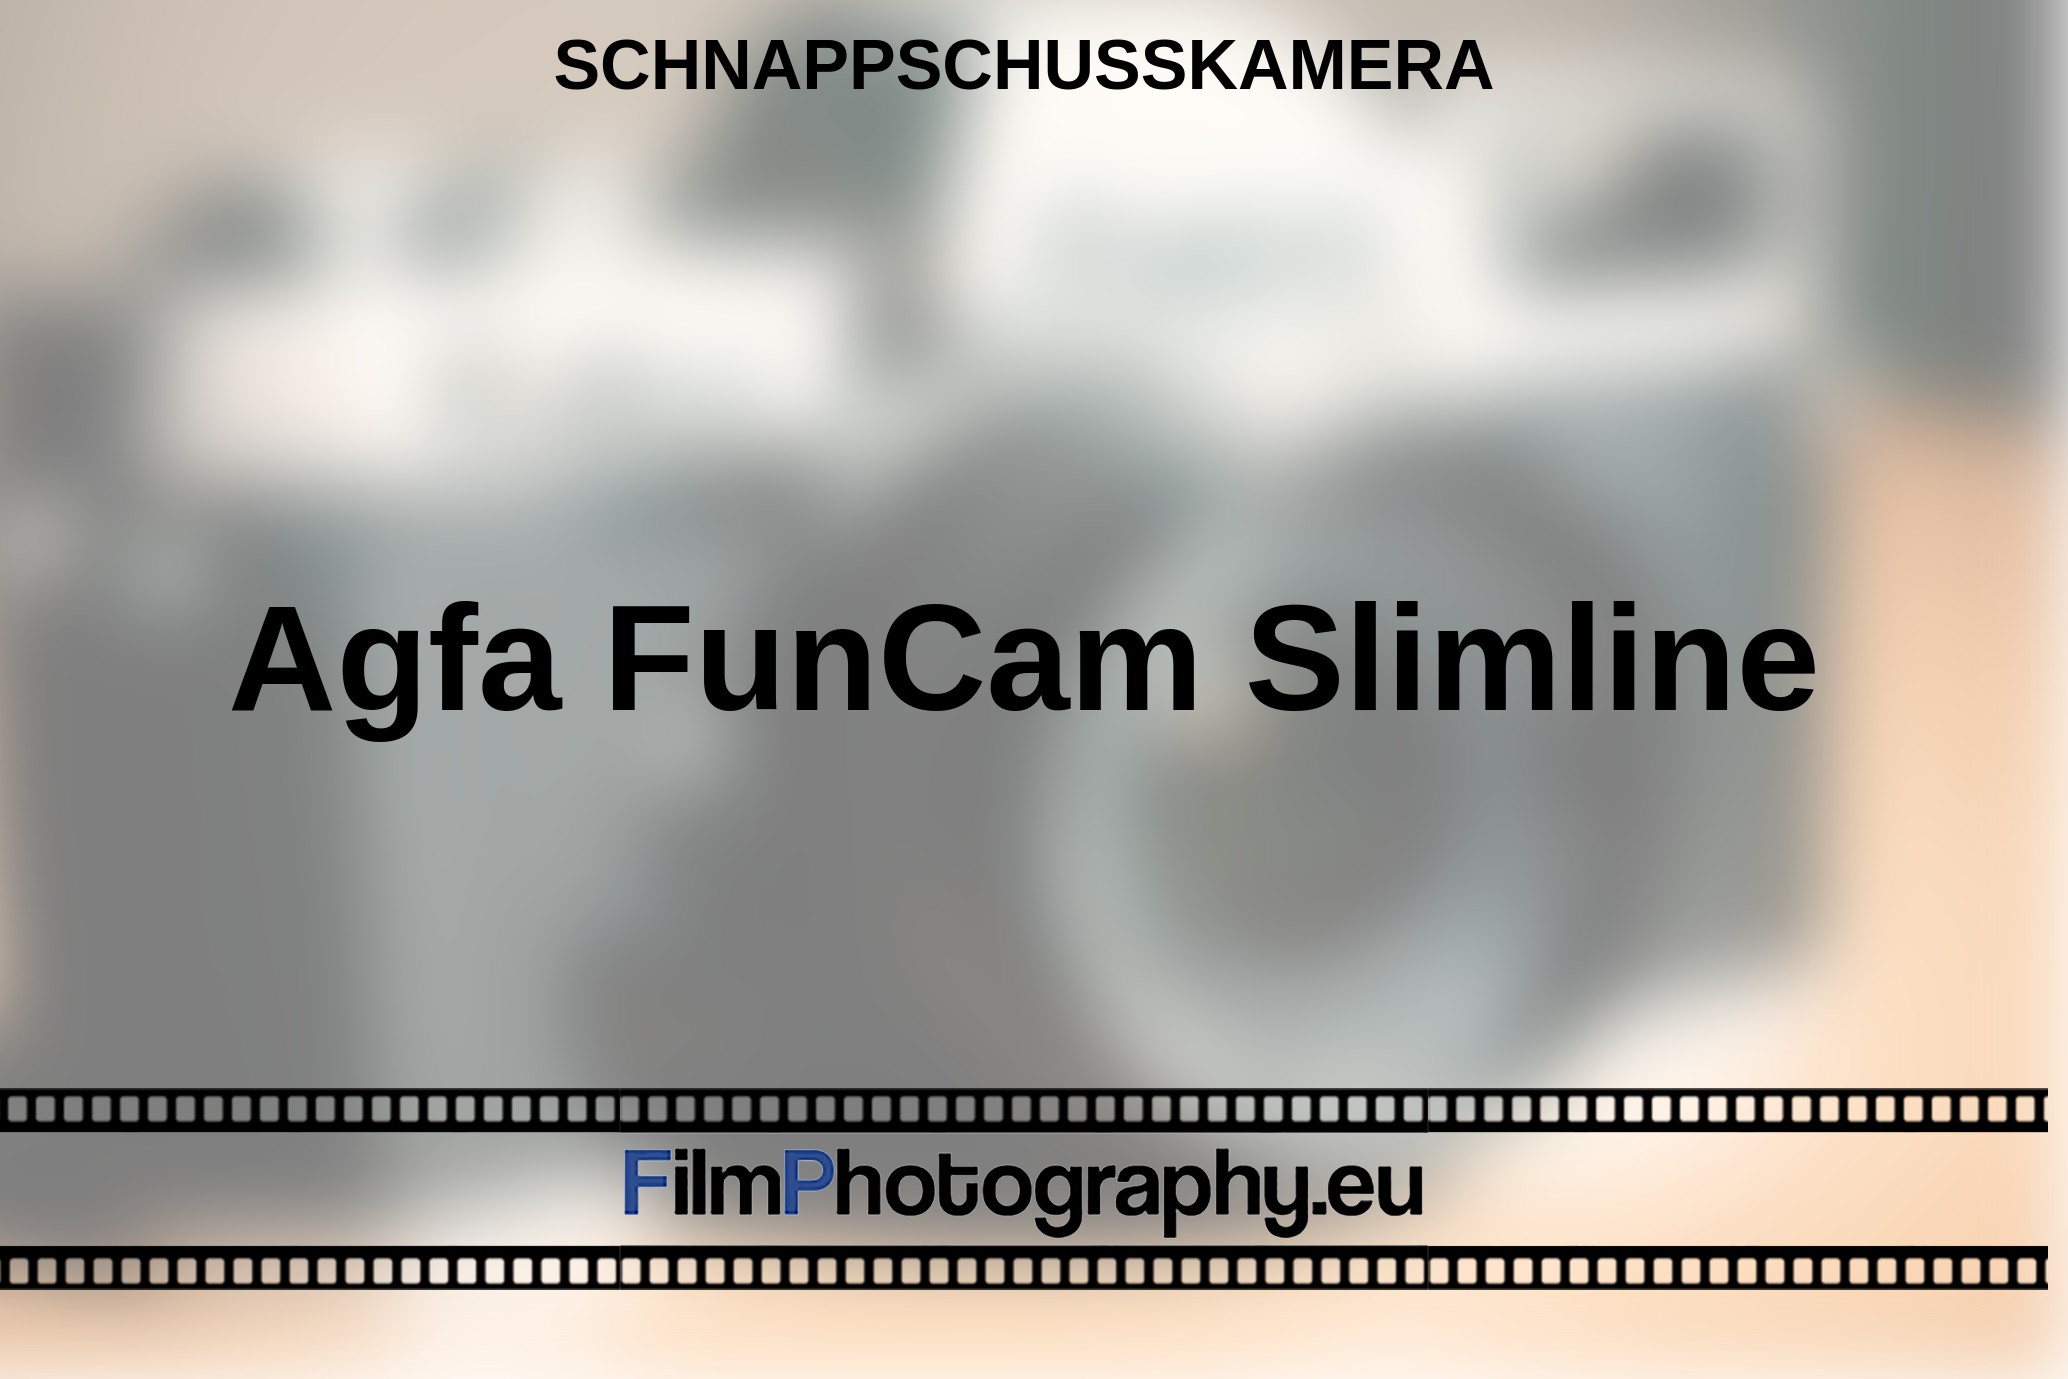 Agfa-FunCam-Slimline-Schnappschusskamera-bnv.jpg